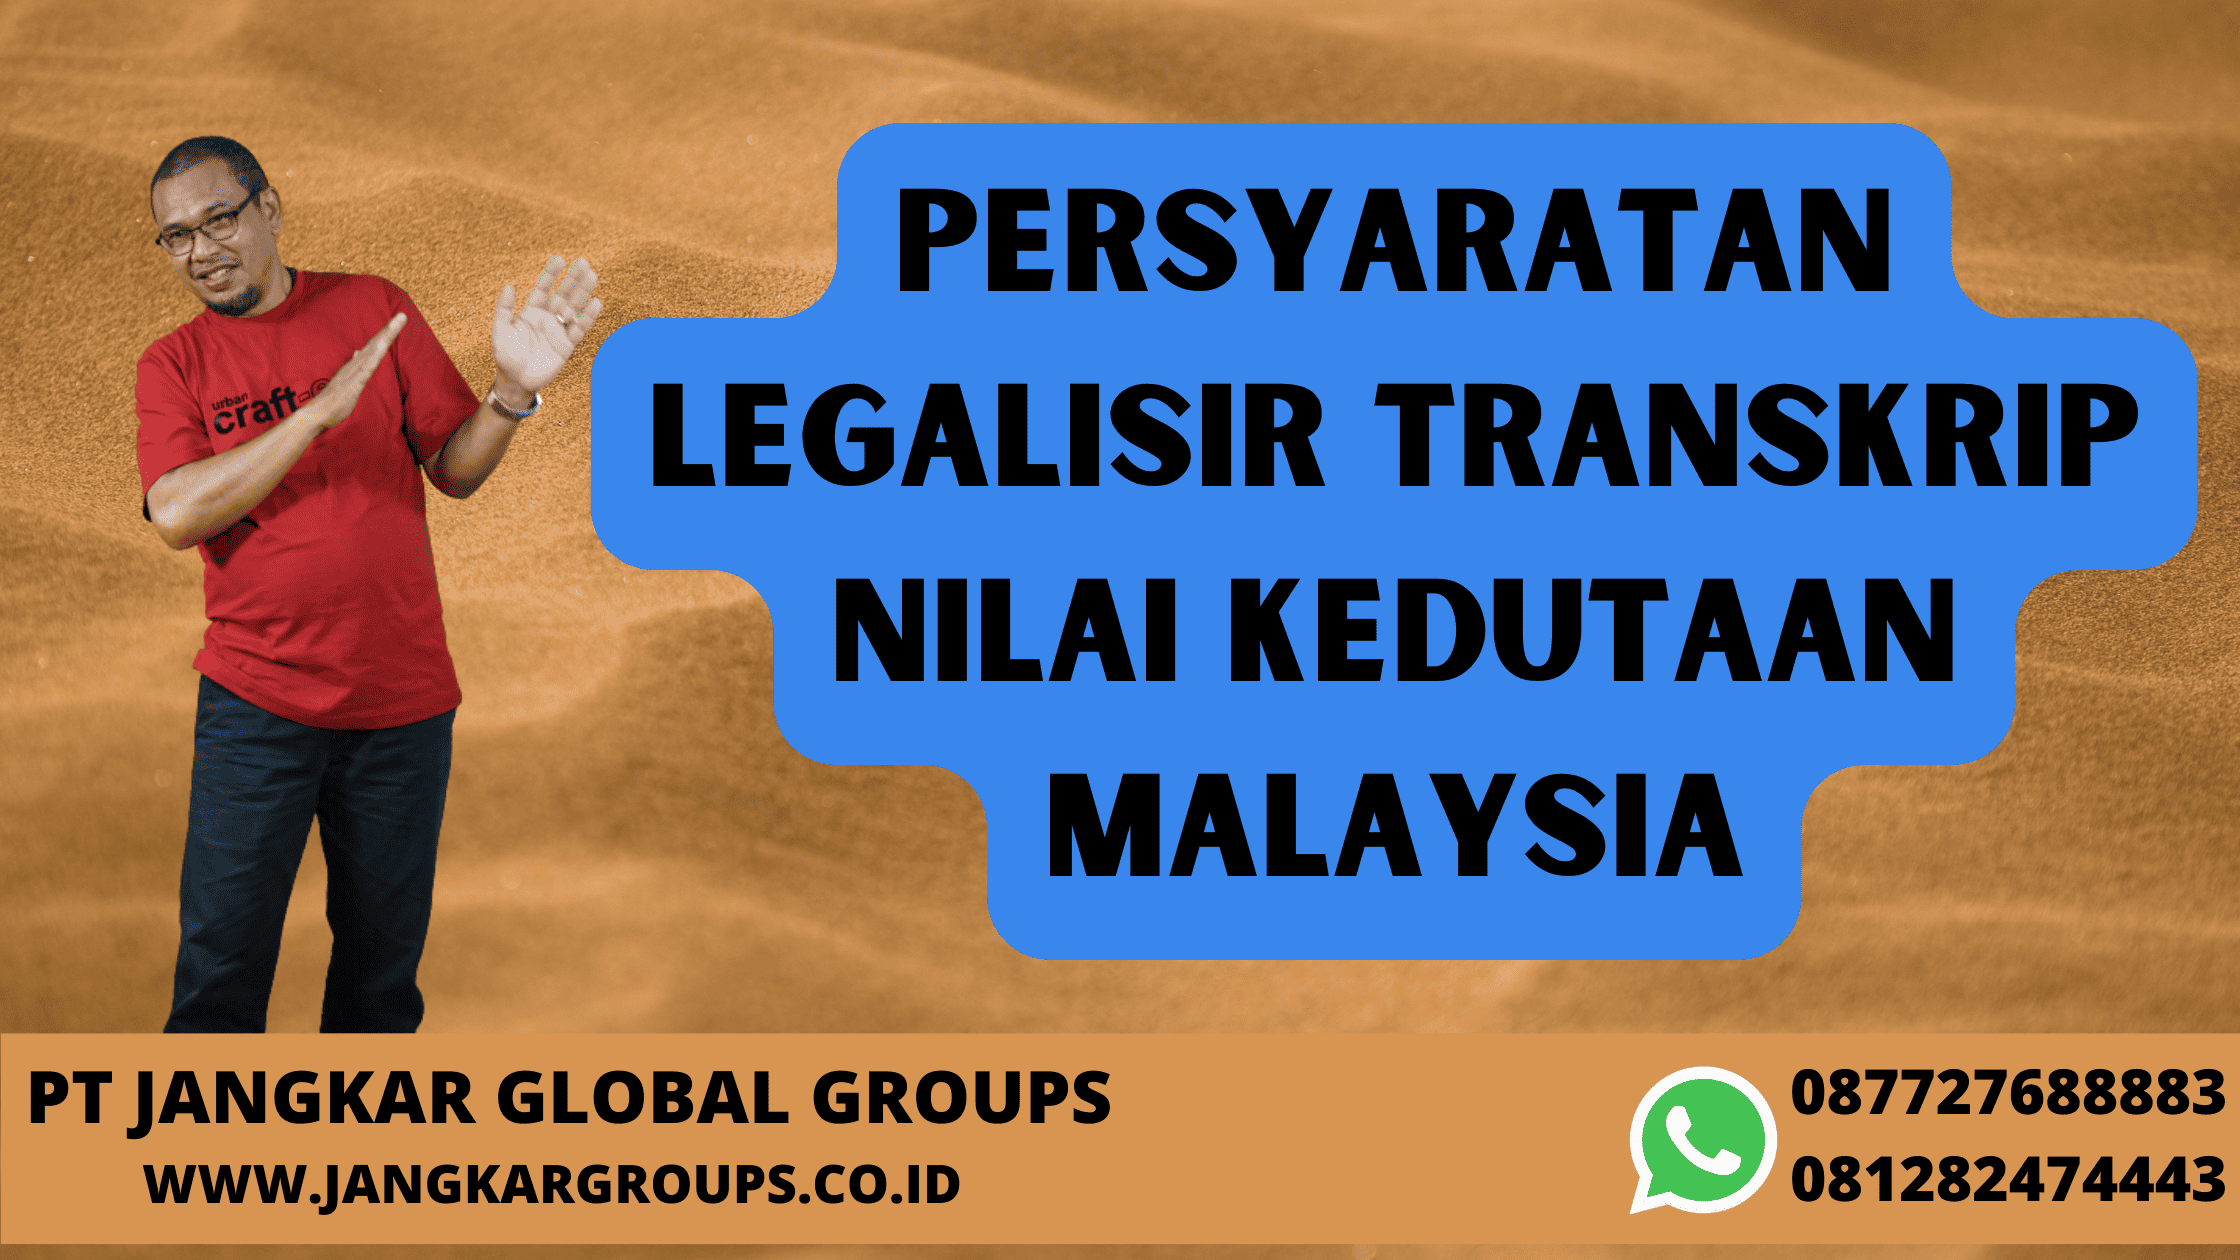 Persyaratan Legalisir Transkrip Nilai Kedutaan Malaysia